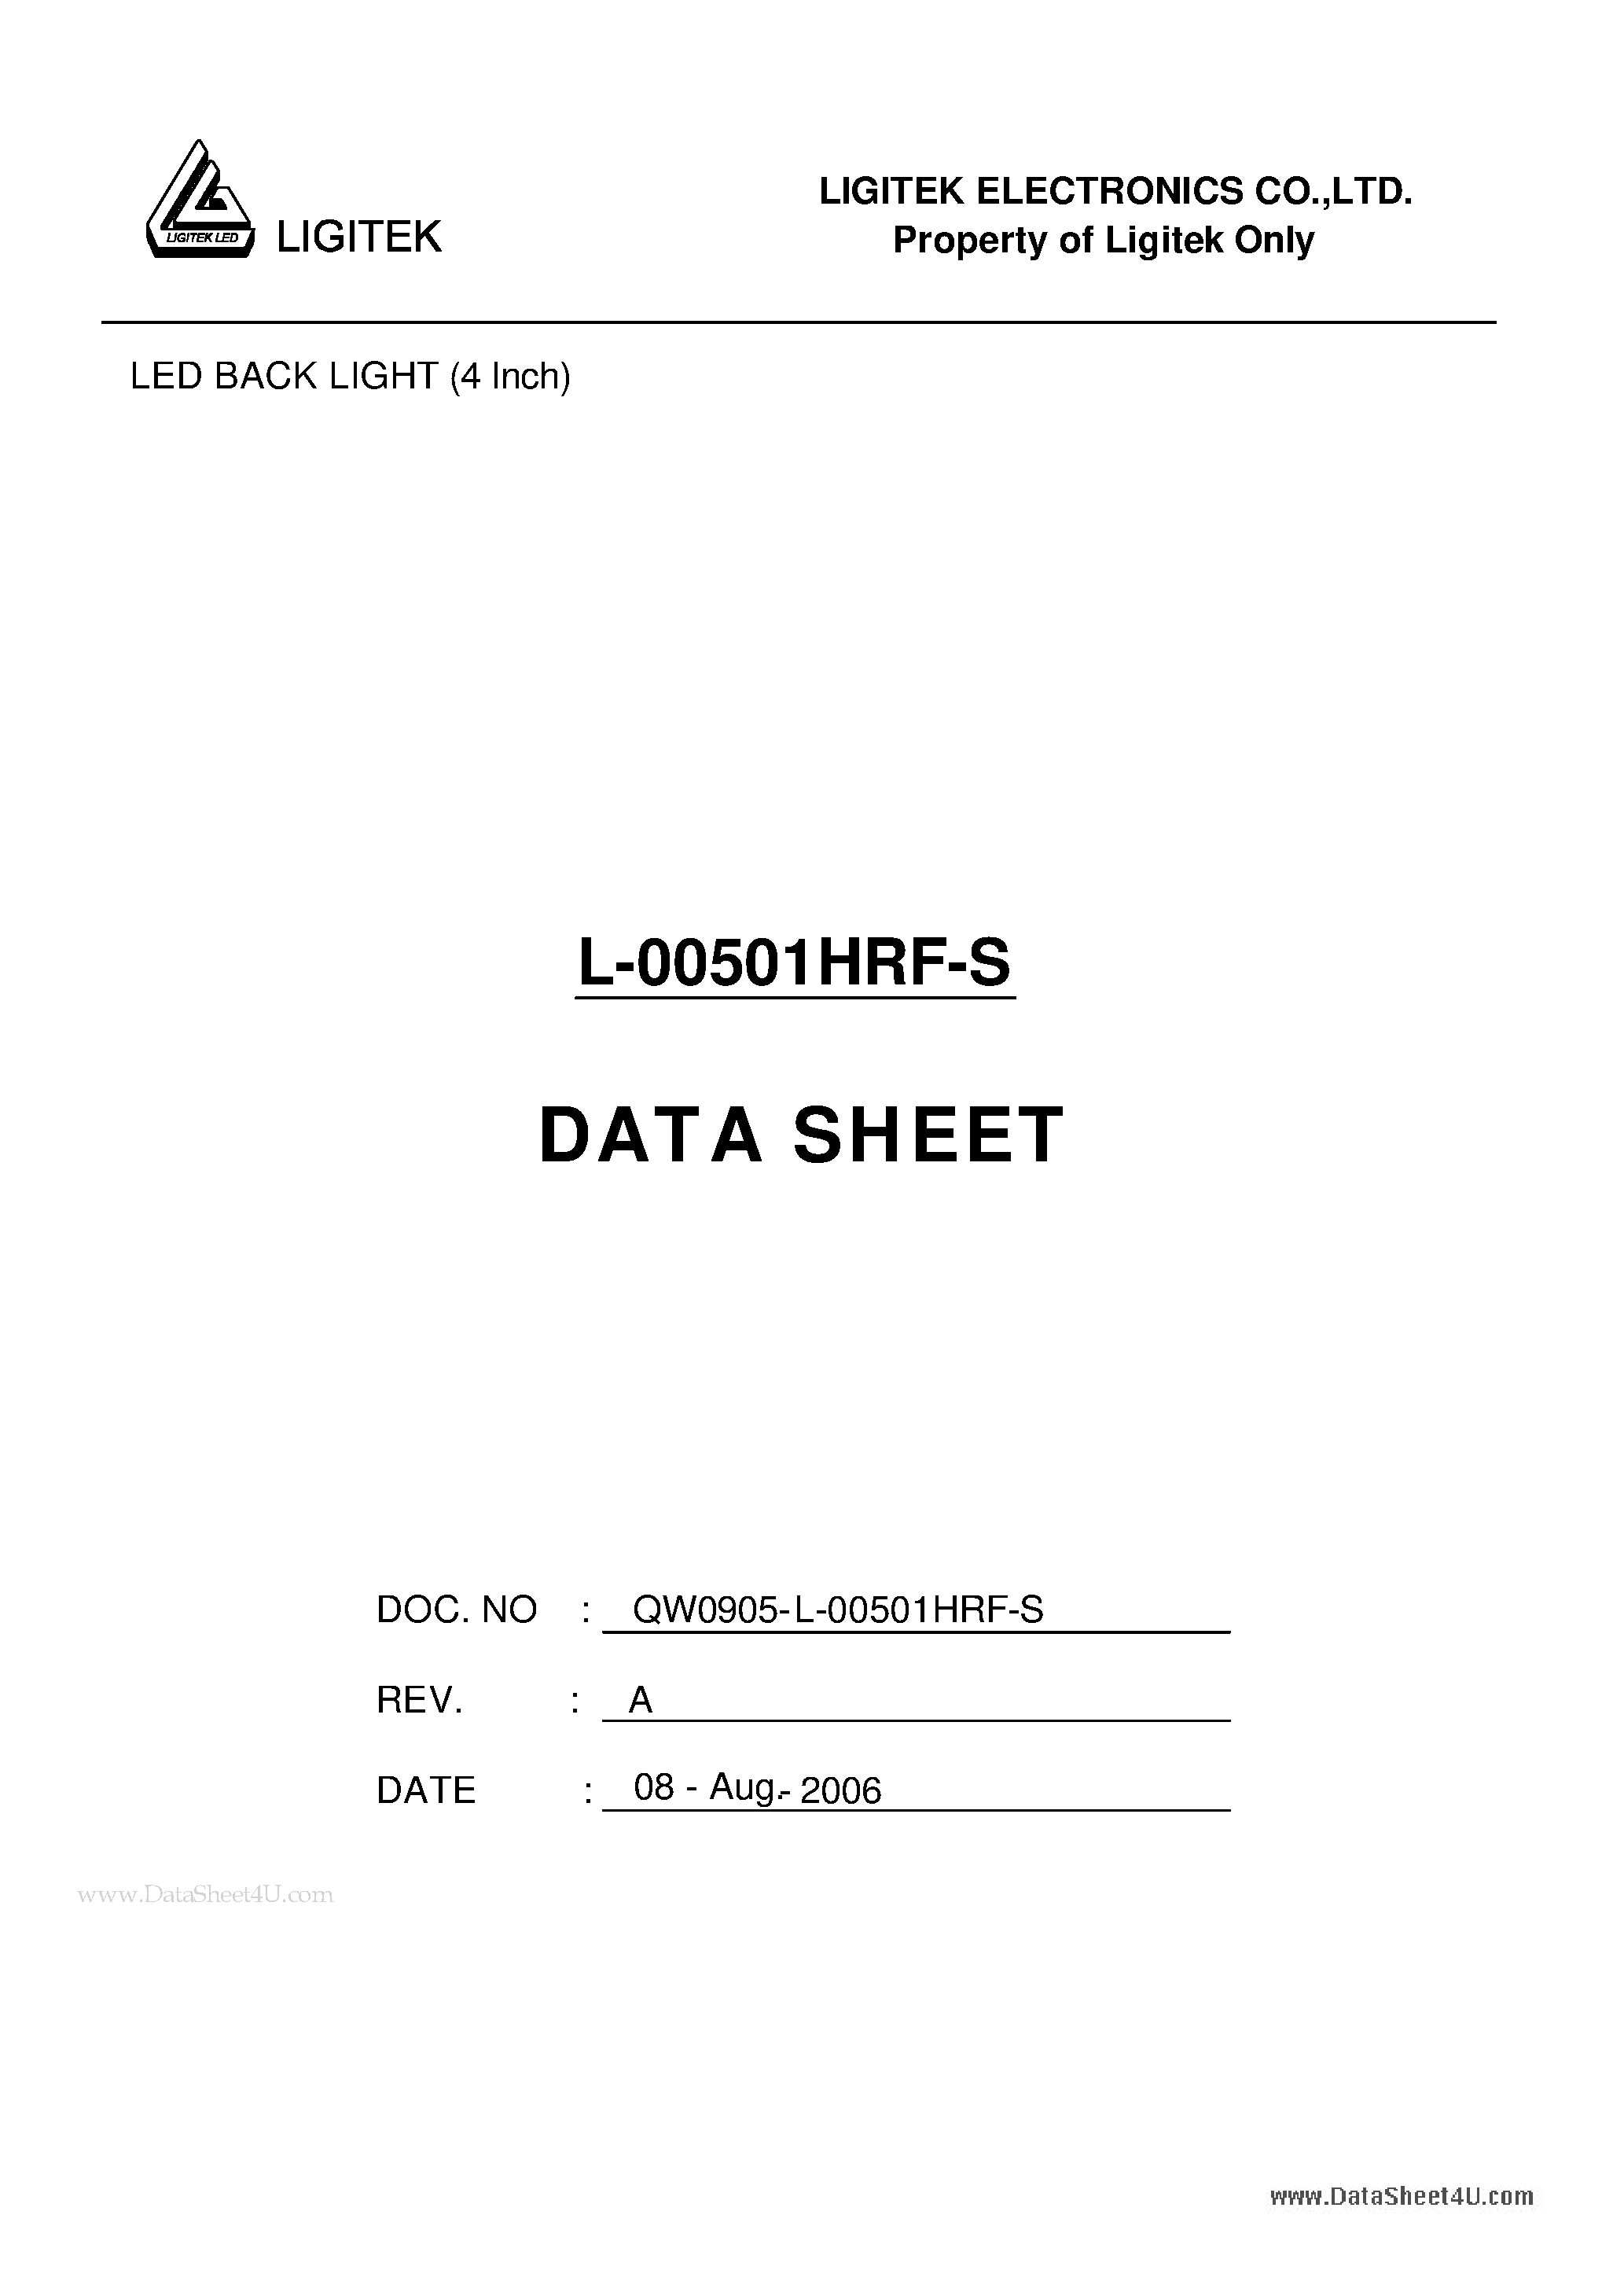 Даташит L-00501HRF-S - LED BACK LIGHT (4 Inch) страница 1